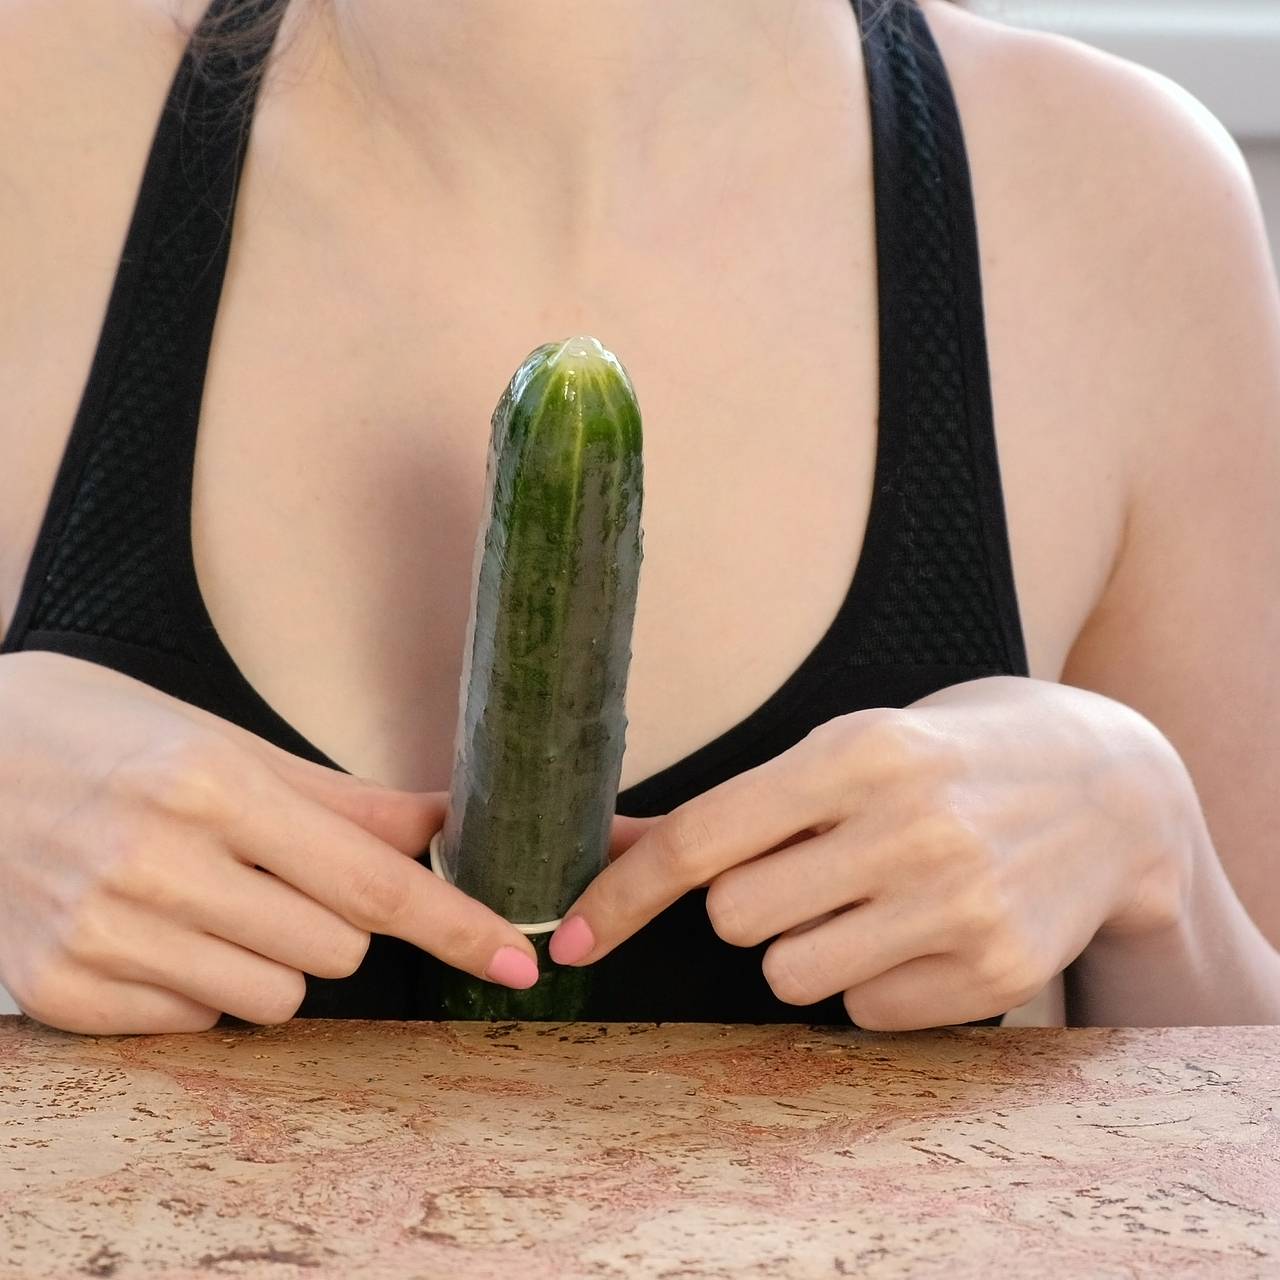 Сексуальное вегетарианство: огурец в манде, кабачок в жопе - не девушка, а салат!